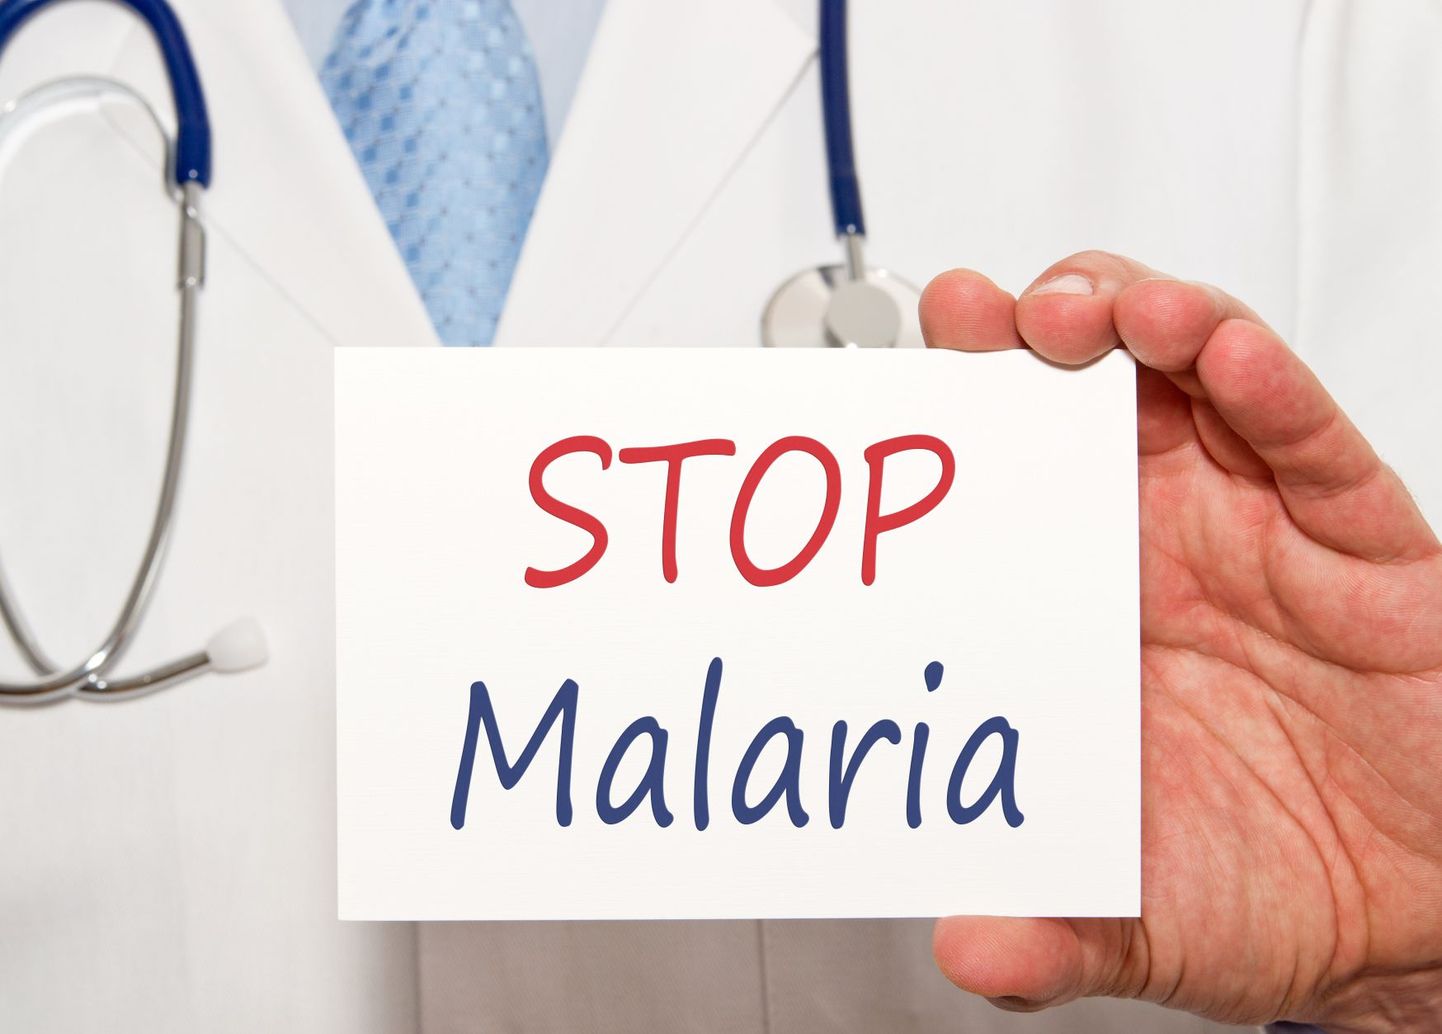 Malaaria ennetamises on tehtud edusamme